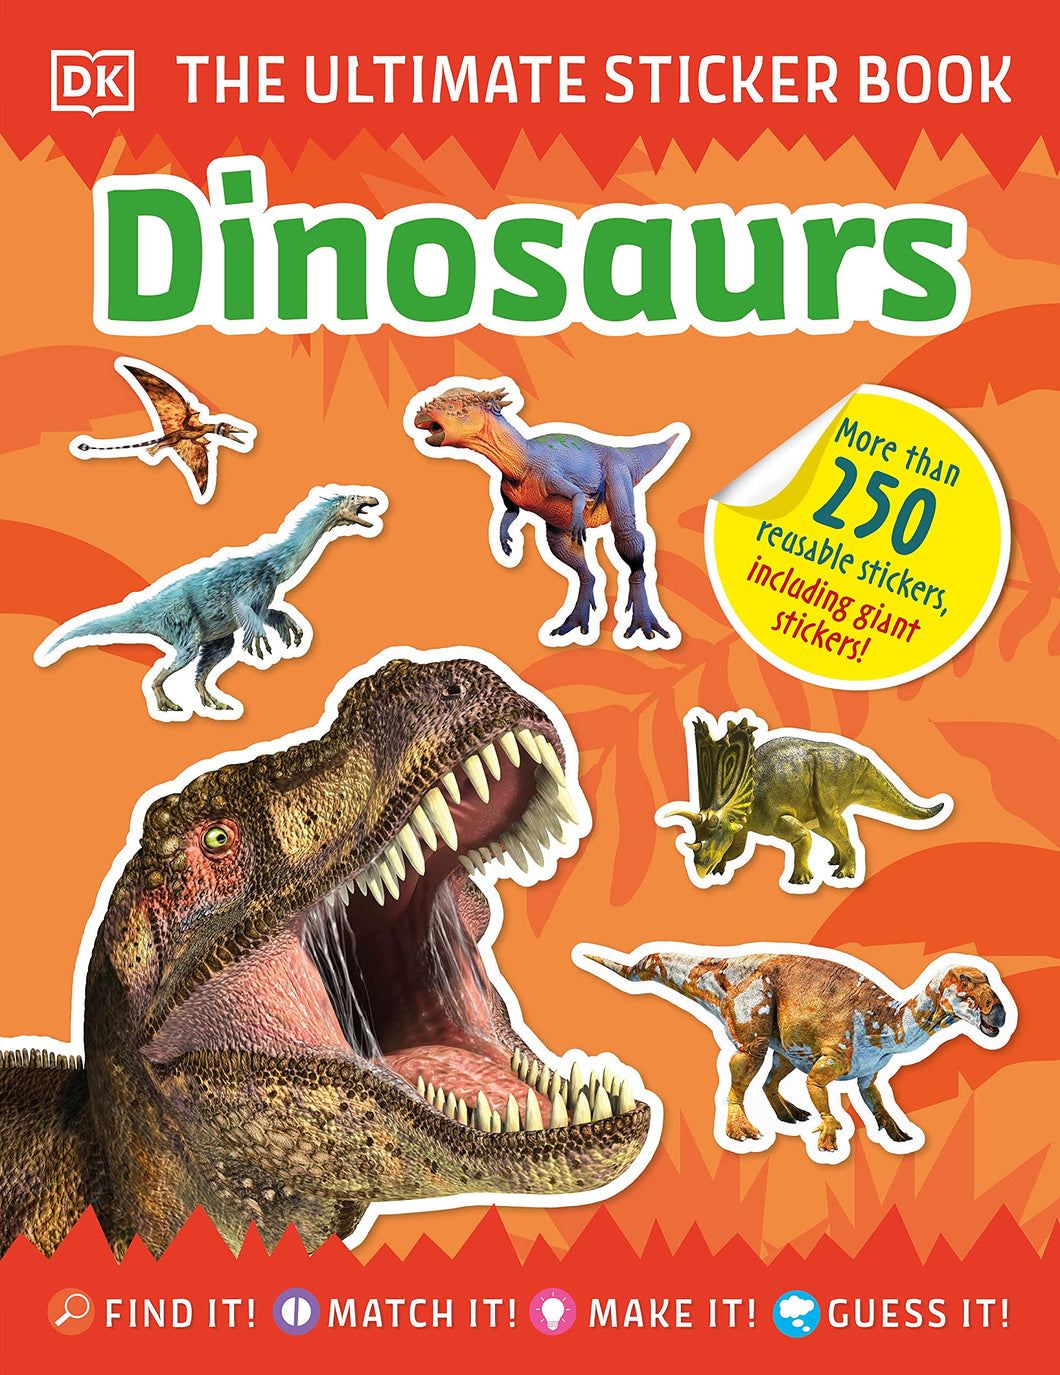 Dinosaurs Reusable Sticker Book